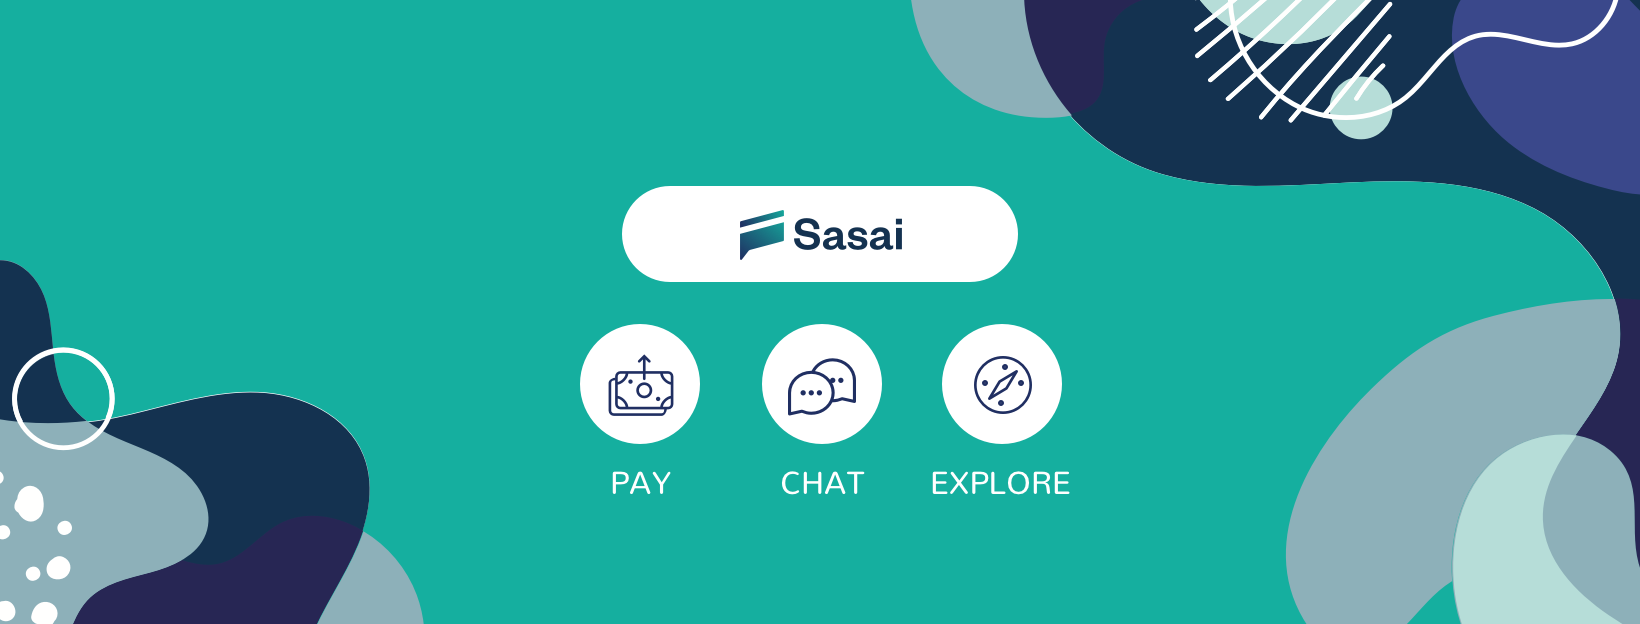 Sassi services